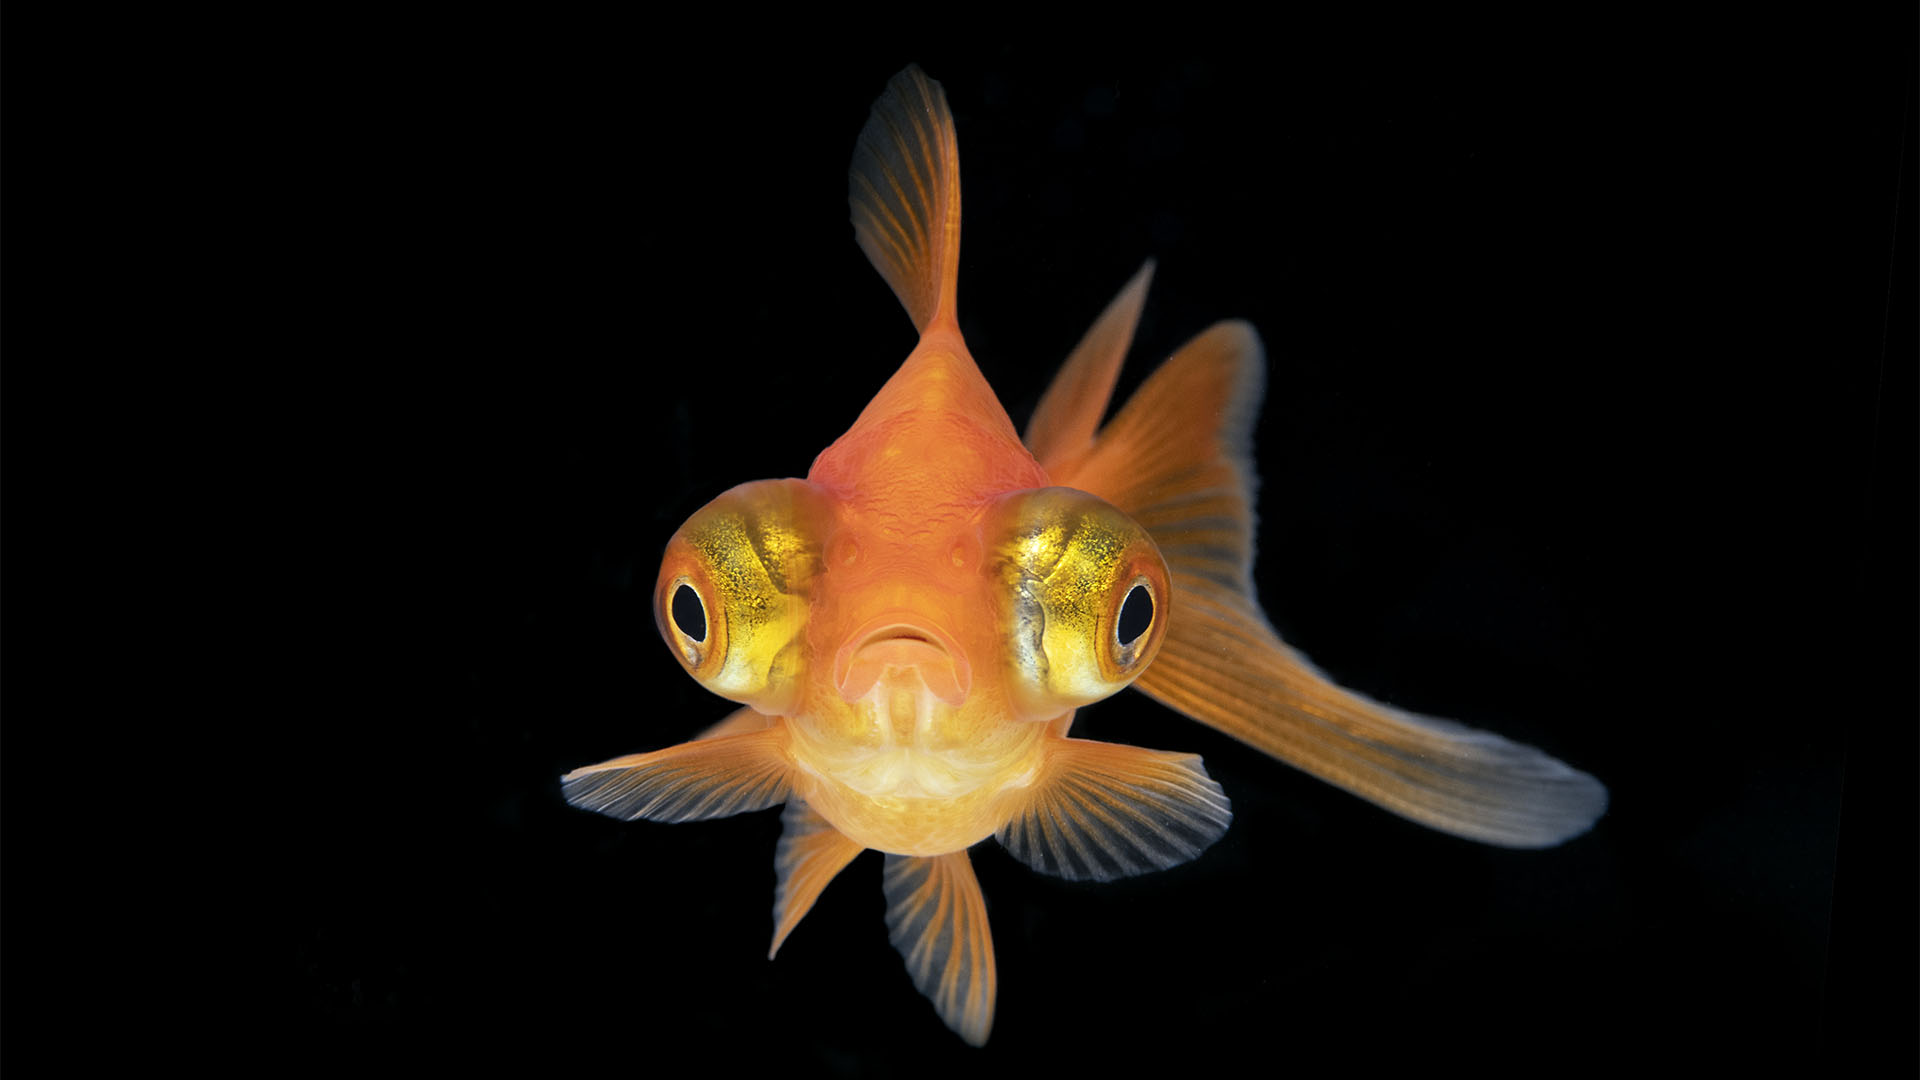 En otro estudio se estableció que los peces mostraron un tipo de "detracción" hacia ciertos tipos de sonido a los que fueron expuestos (Getty)